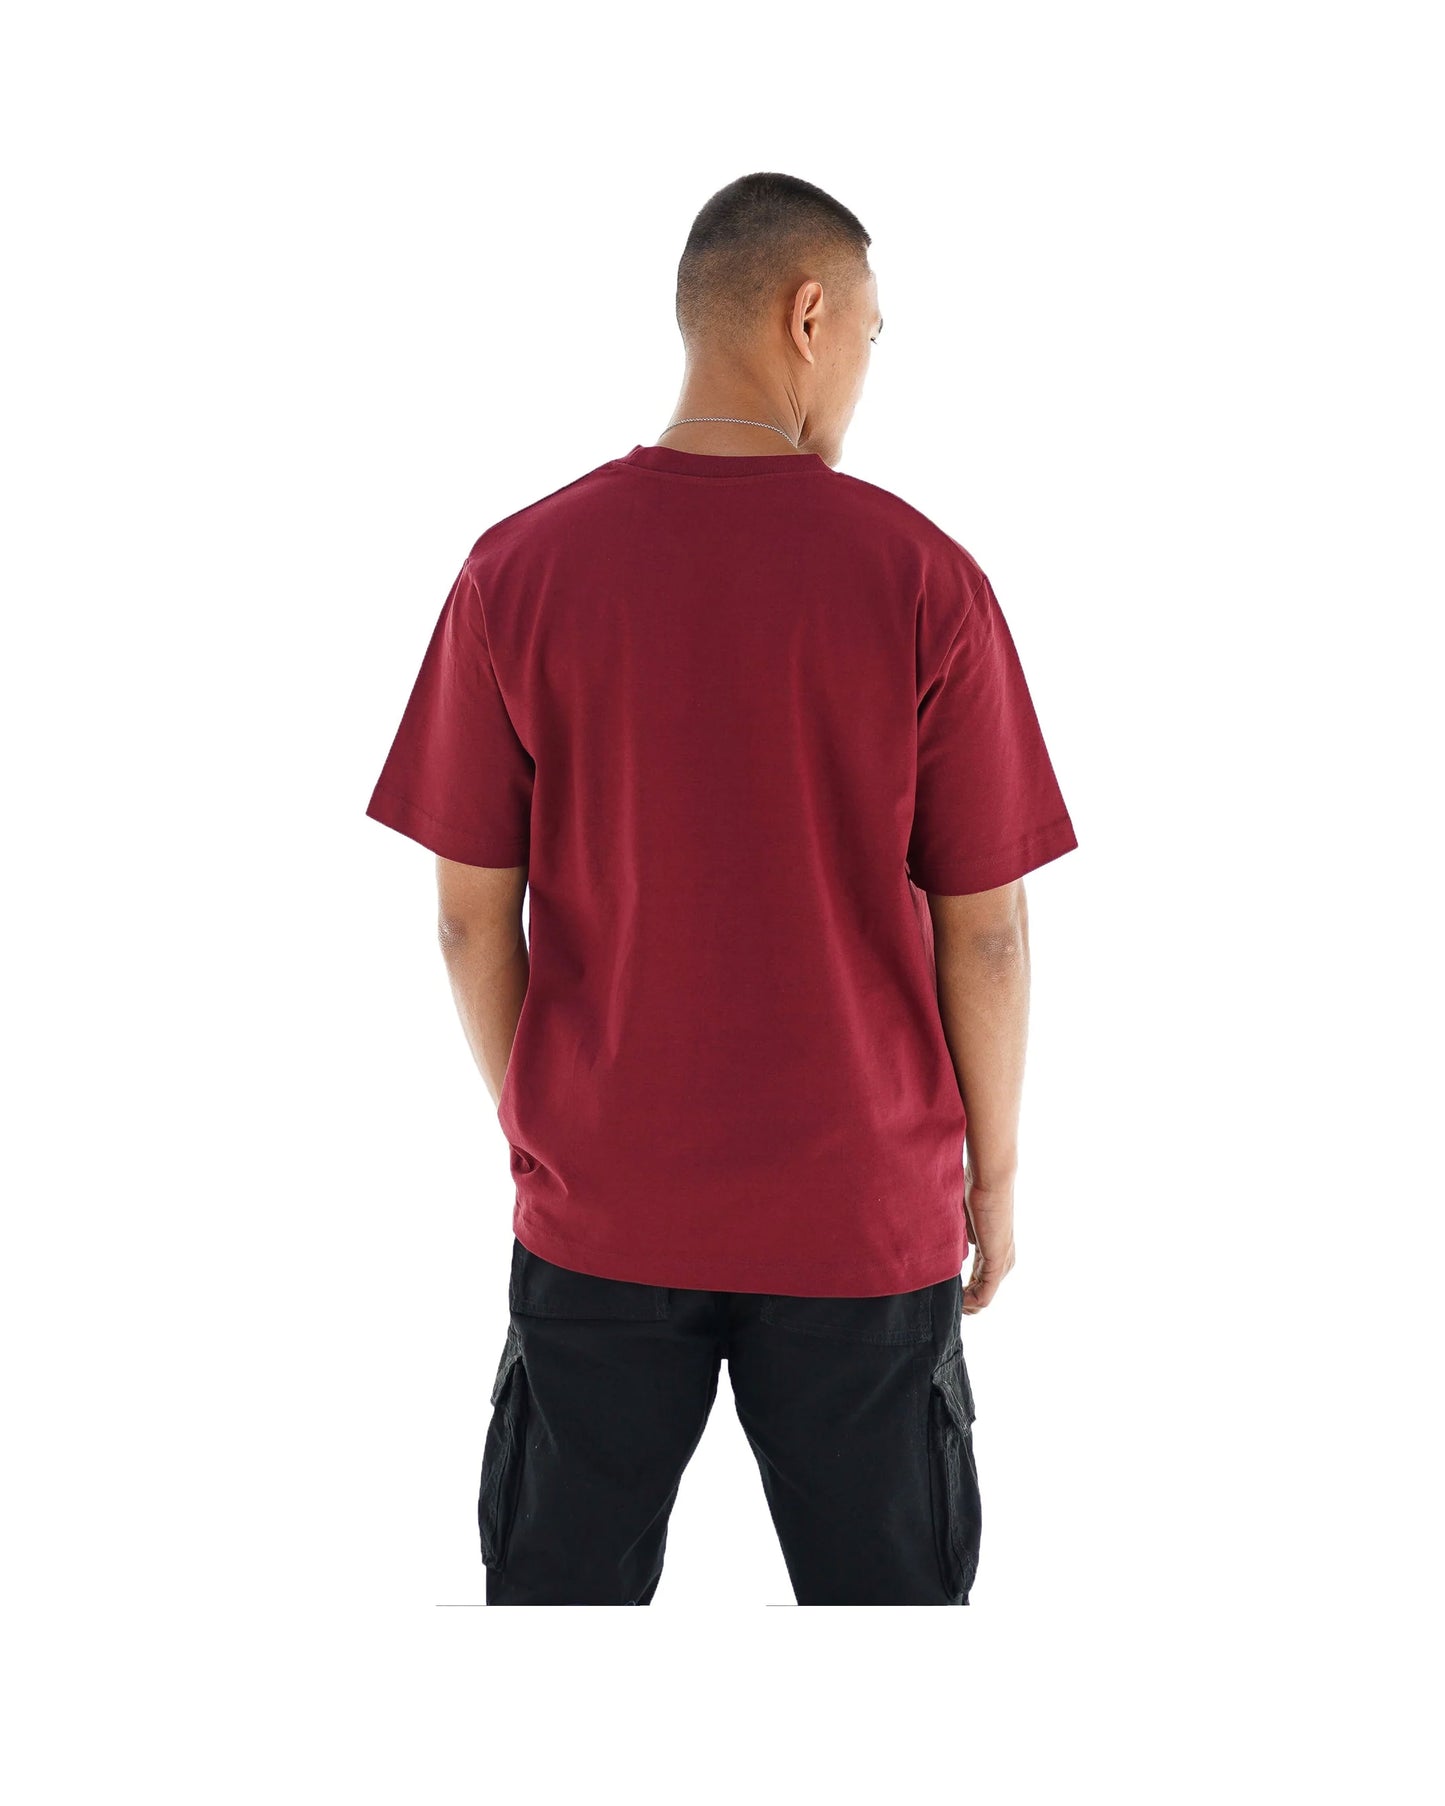 
                  
                    Wild Spirit T-Shirt - Deep Red
                  
                